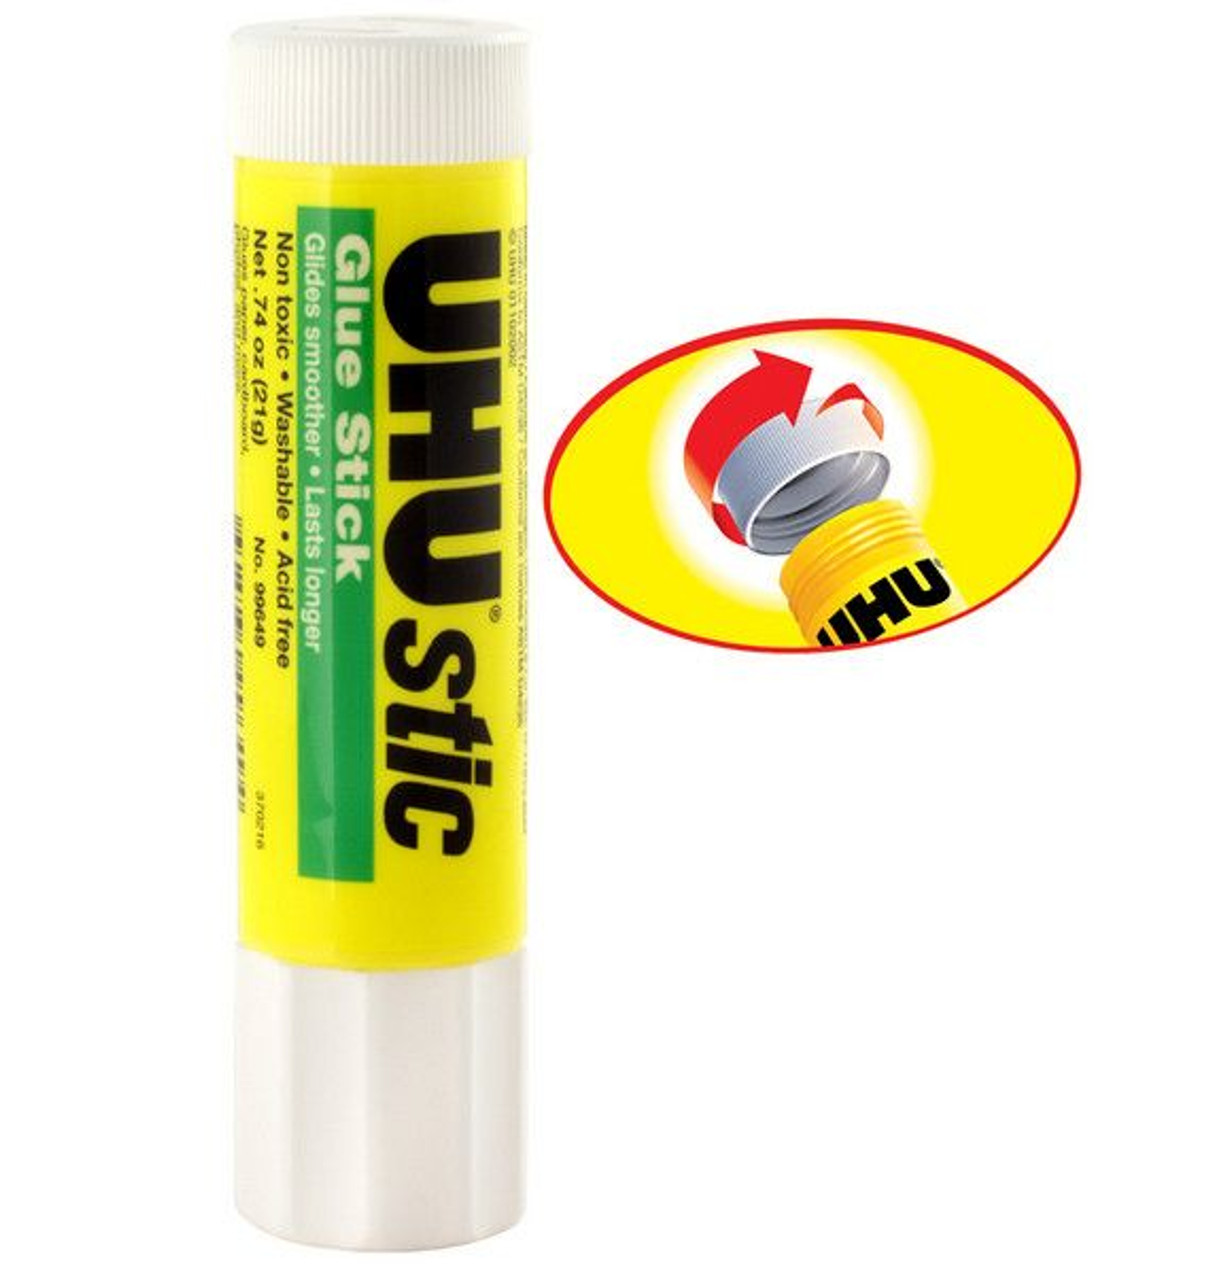 UHU Glue Stick - FLAX art & design